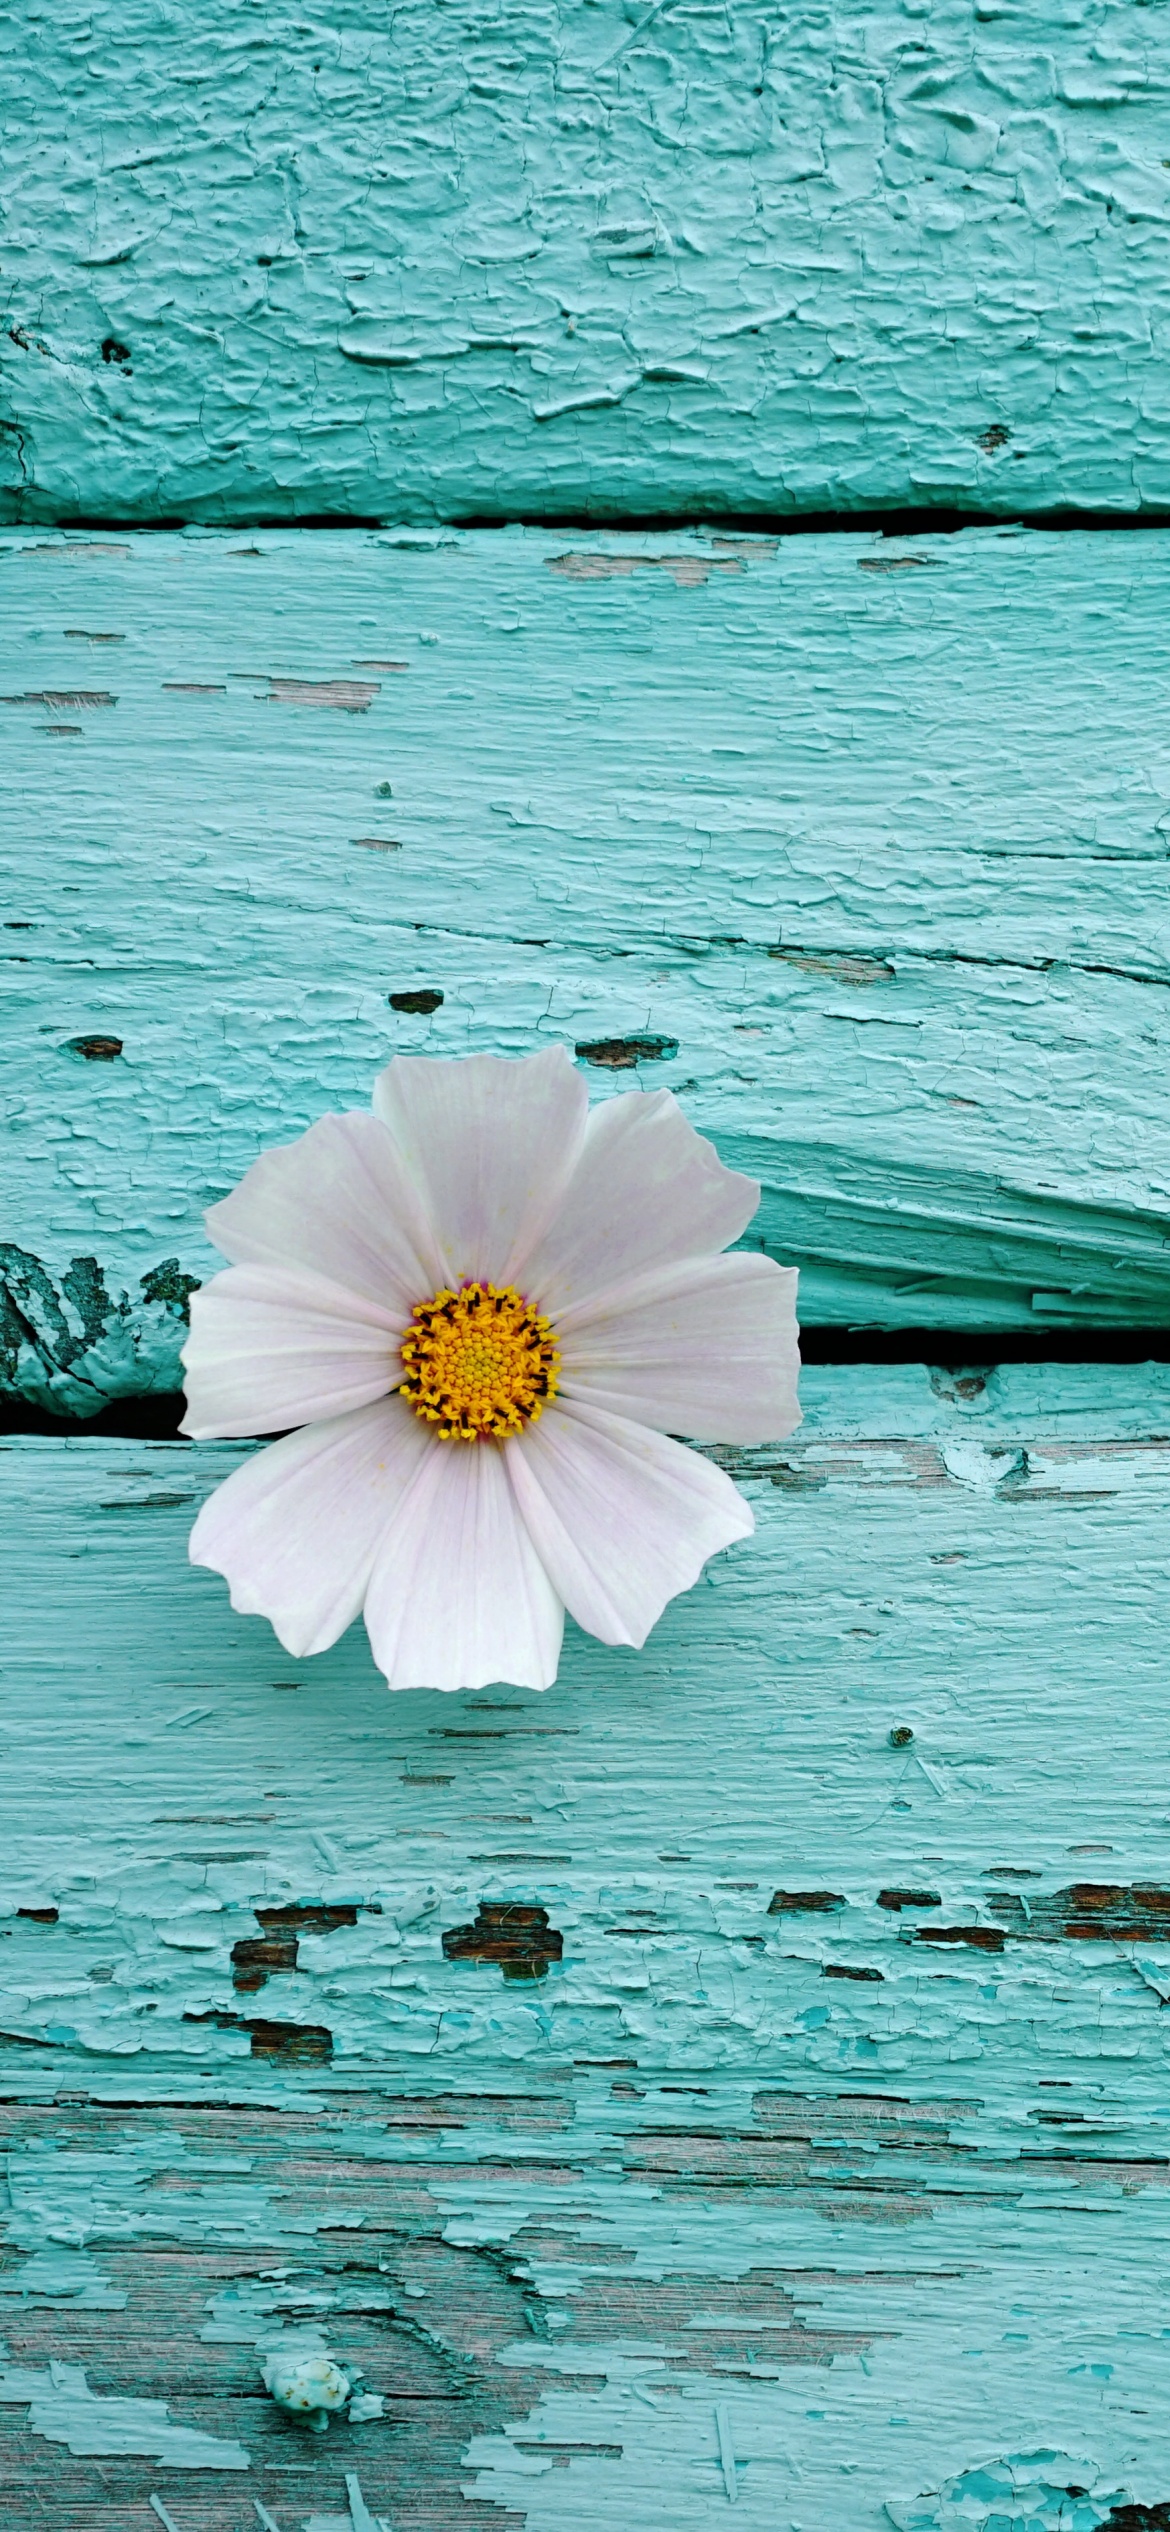 Hoa trắng: Hoa trắng là biểu tượng của tình yêu trong sáng, của sự tinh khôi trong cuộc sống. Hãy cùng chiêm ngưỡng những bông hoa trắng tuyệt đẹp và cảm nhận giá trị của sự trong sáng trong hình ảnh này.